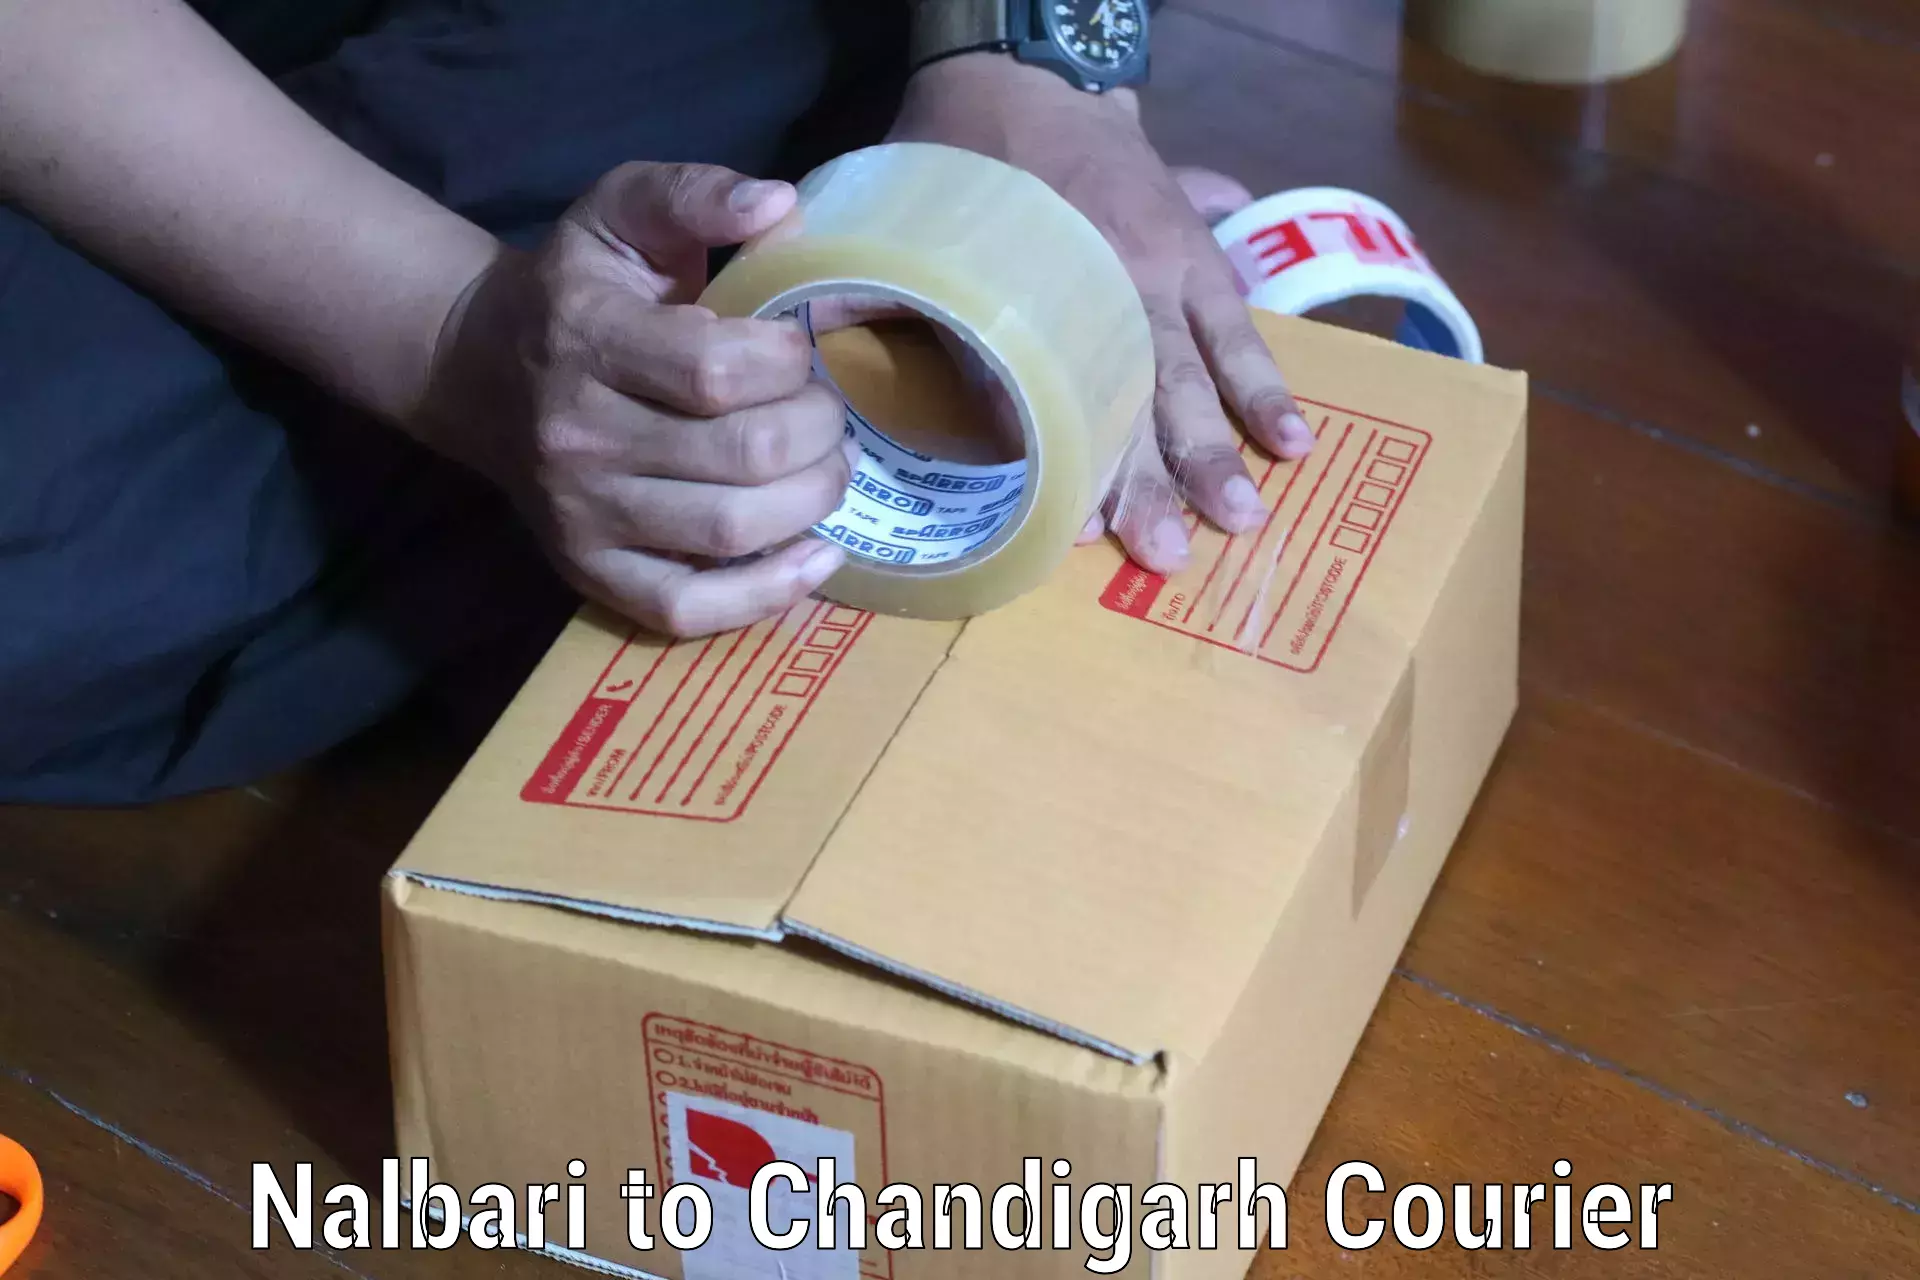 Urban courier service Nalbari to Chandigarh